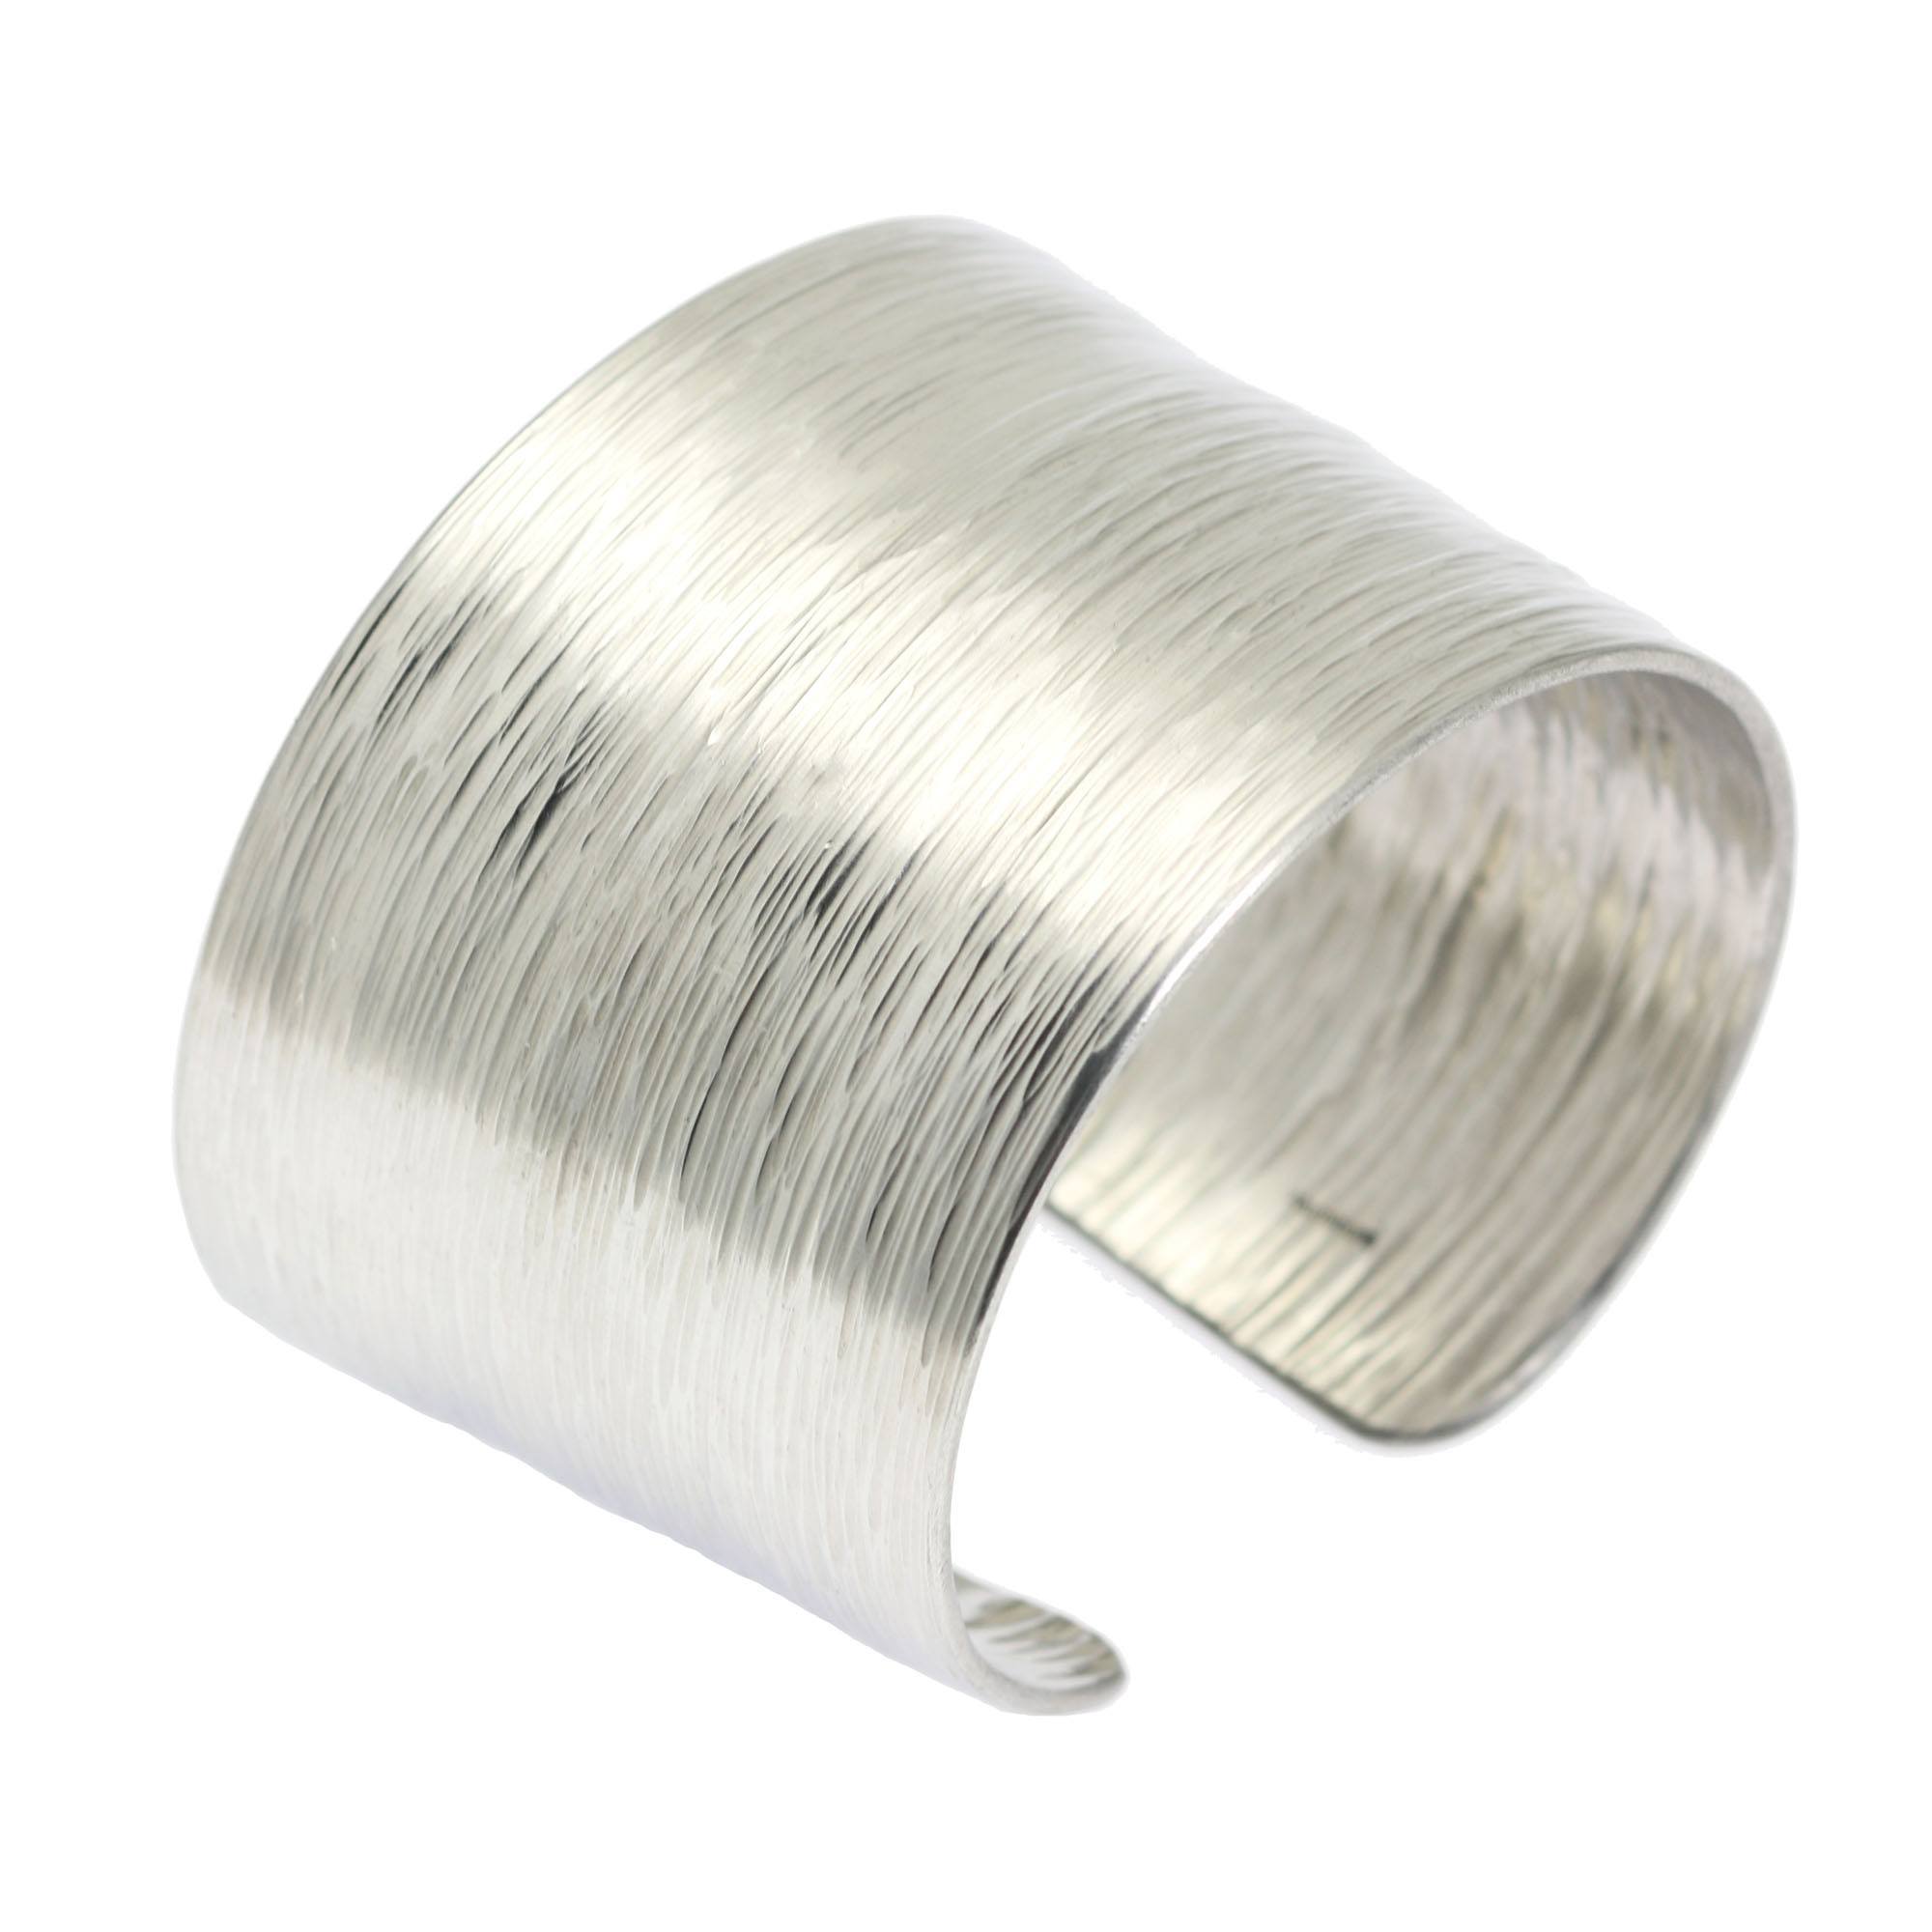 Aluminum Bark Cuff - Wide Silver Tone Cuff Bracelet